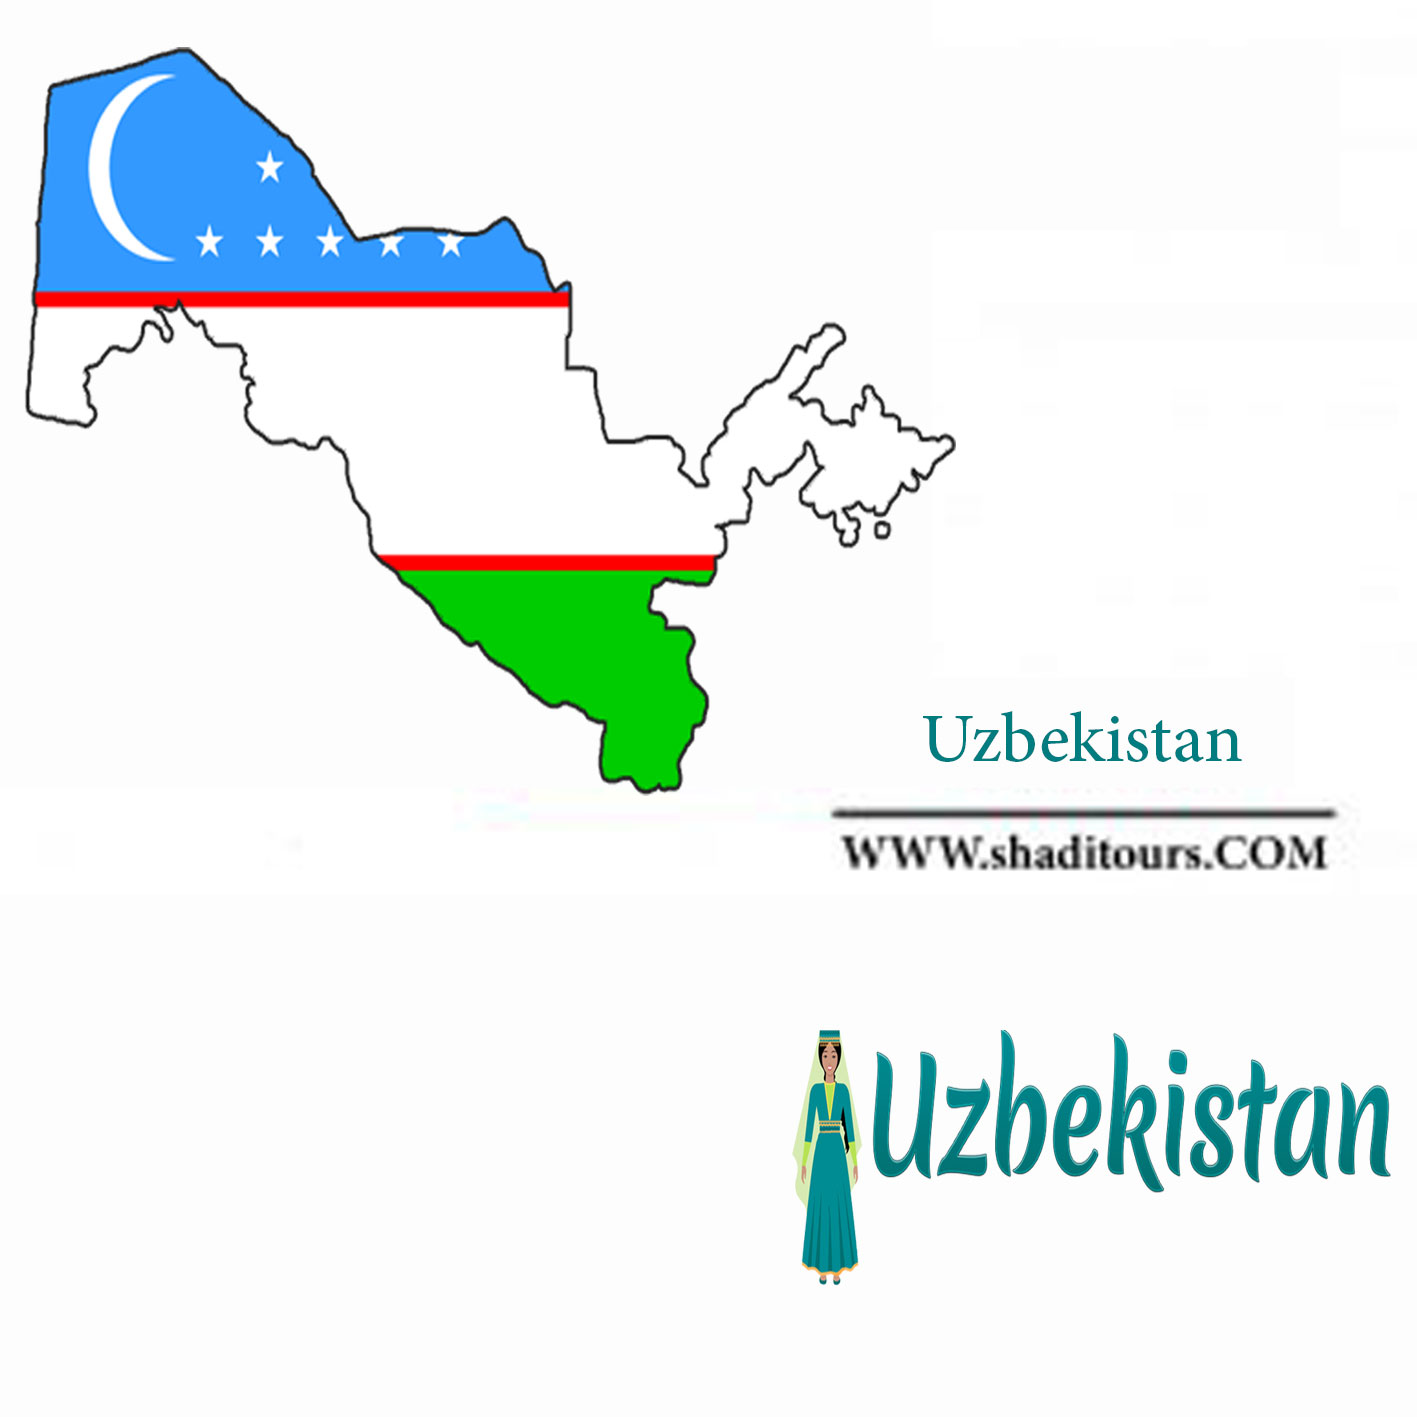 uzbekistan-shaditours